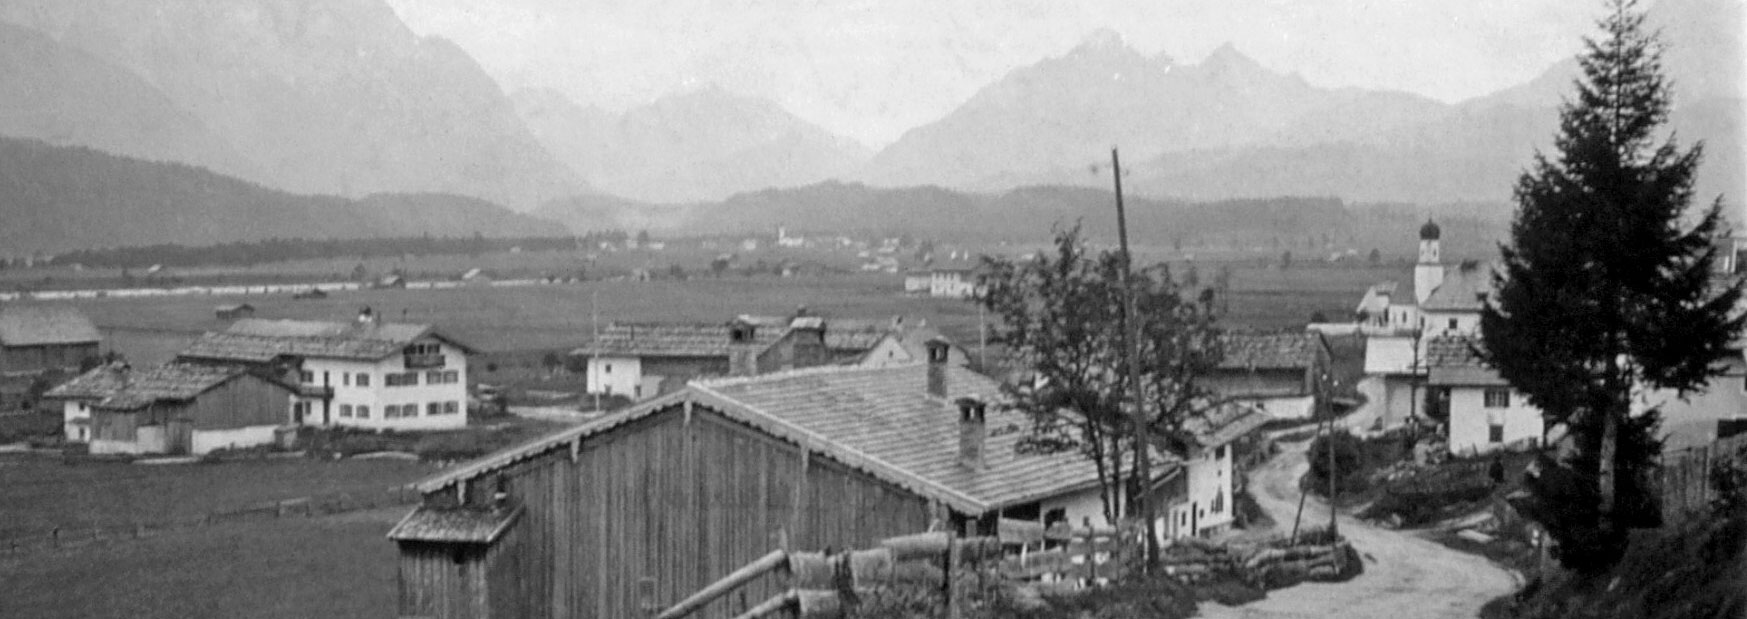 Wallgau um 1910 - Urlaub in Bayern - Alpenwelt Karwendel - Gästehaus Alpengruß